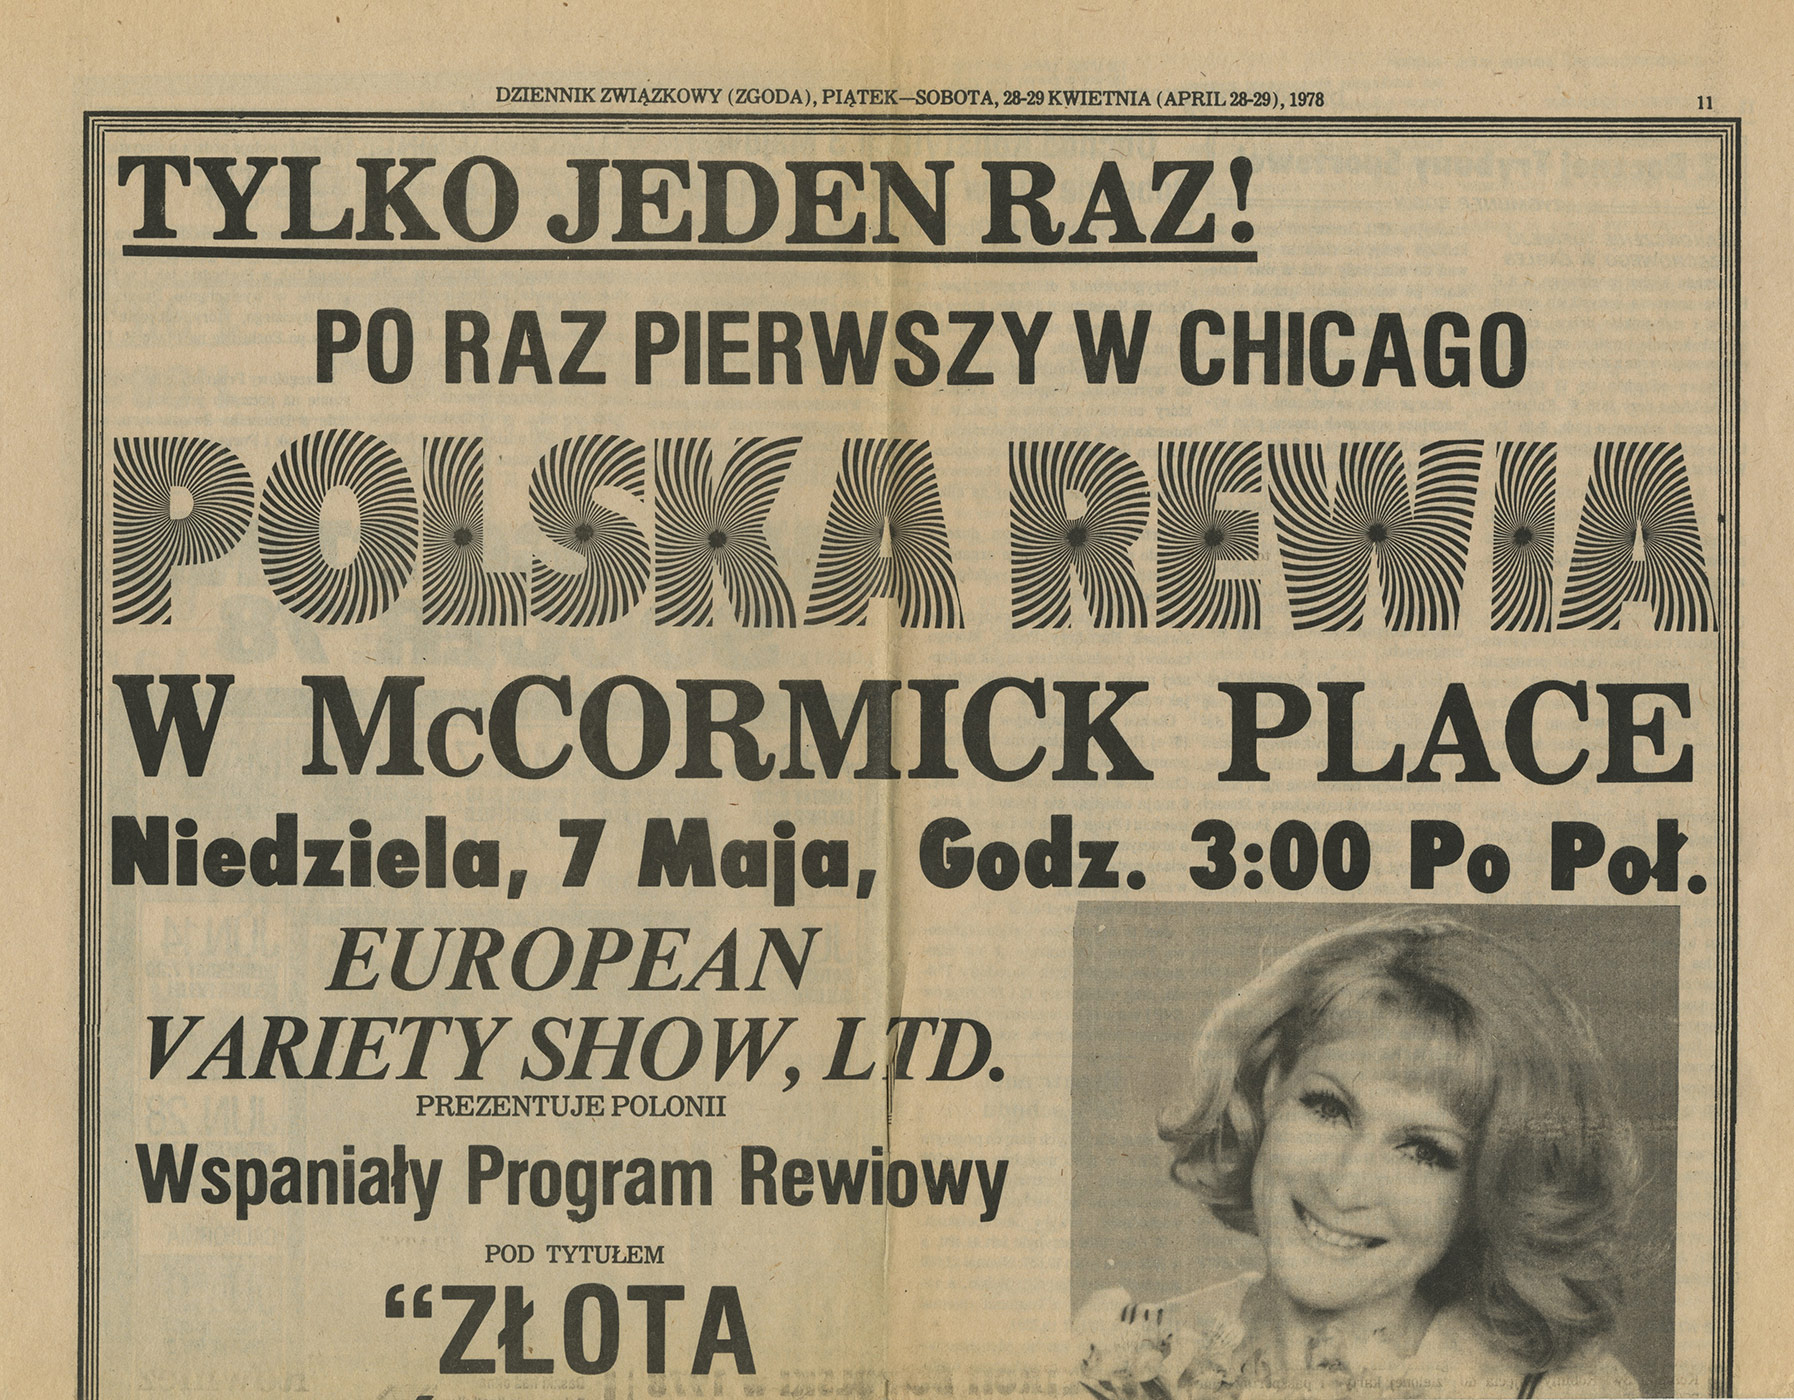 1969-1978_Dziennik_Zwiazkowy_1978_Polska_Rewia_Plakat_01